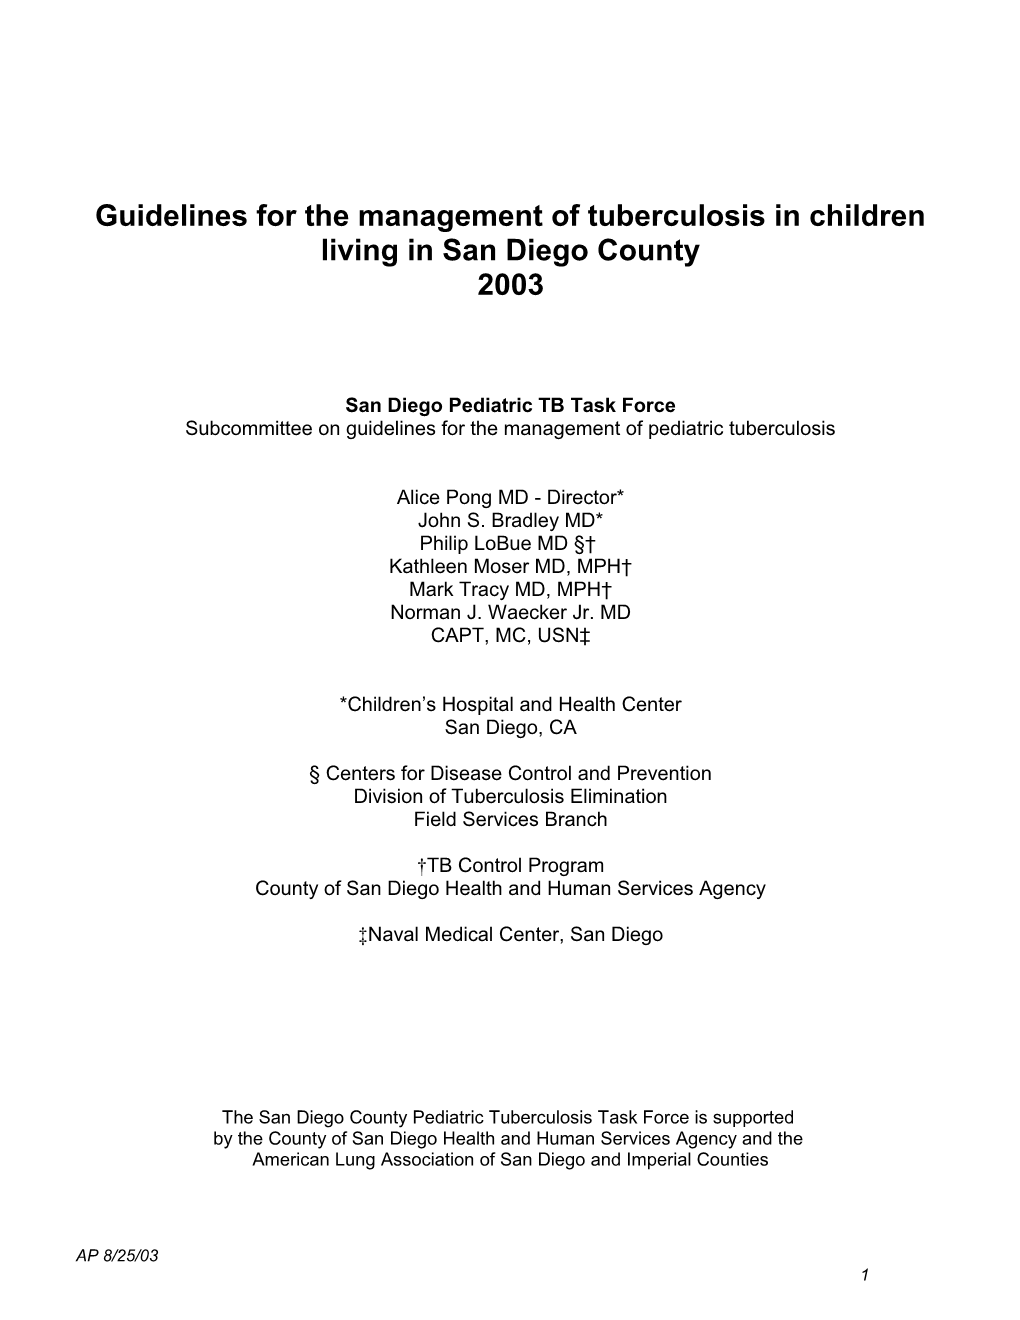 Pediatric Tuberculosis Strategic Plan